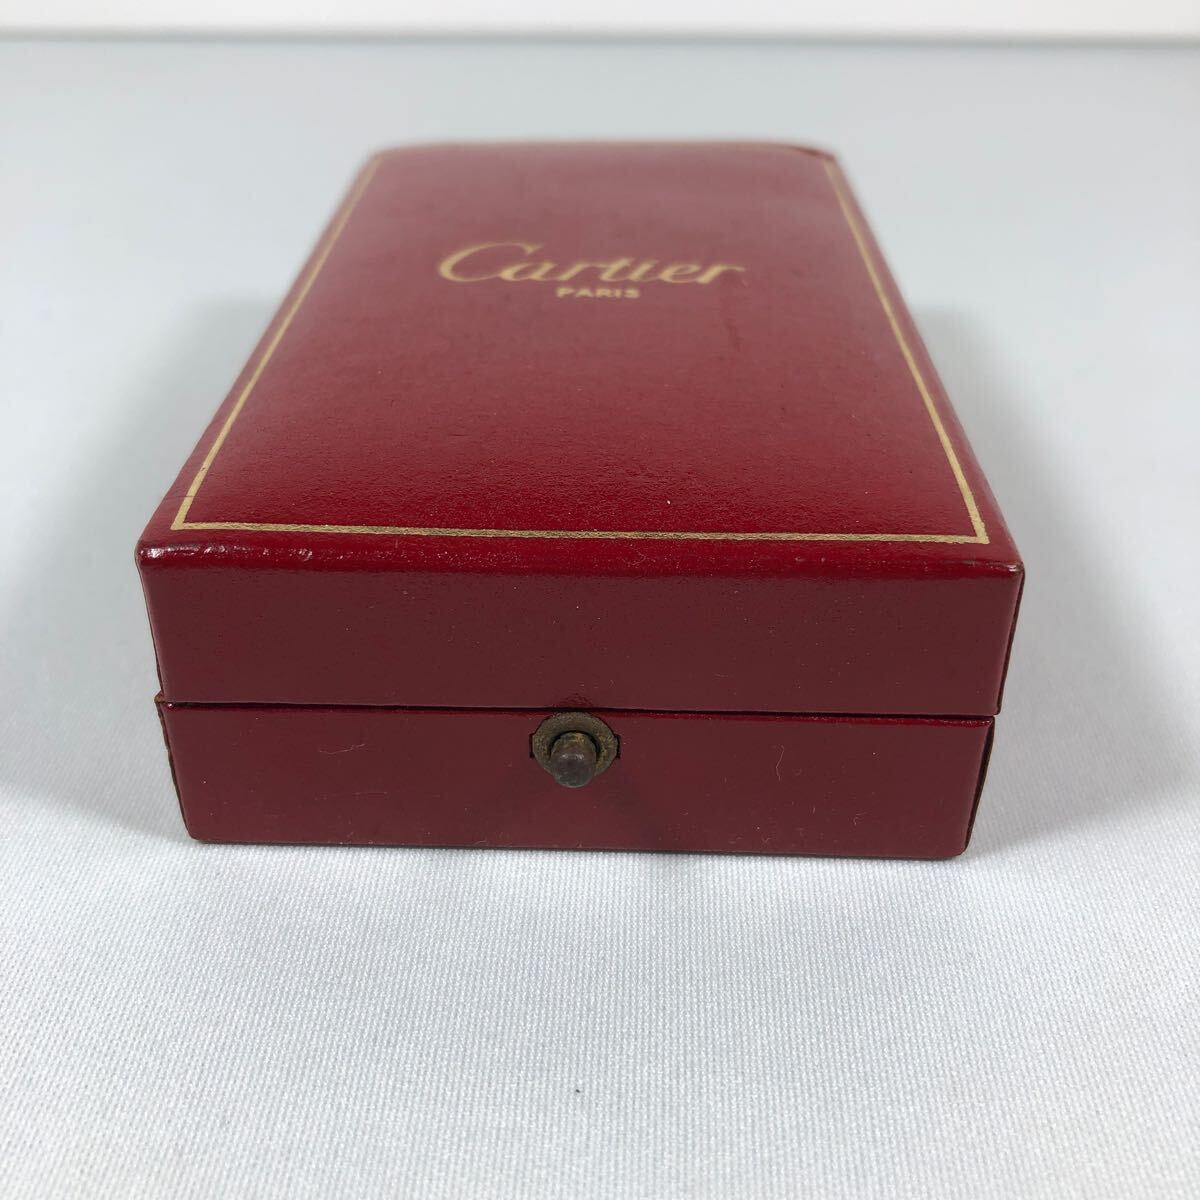 Cartier カルティエ ライター ガスライター ゴールド 金 喫煙グッズ 喫煙具 _画像2